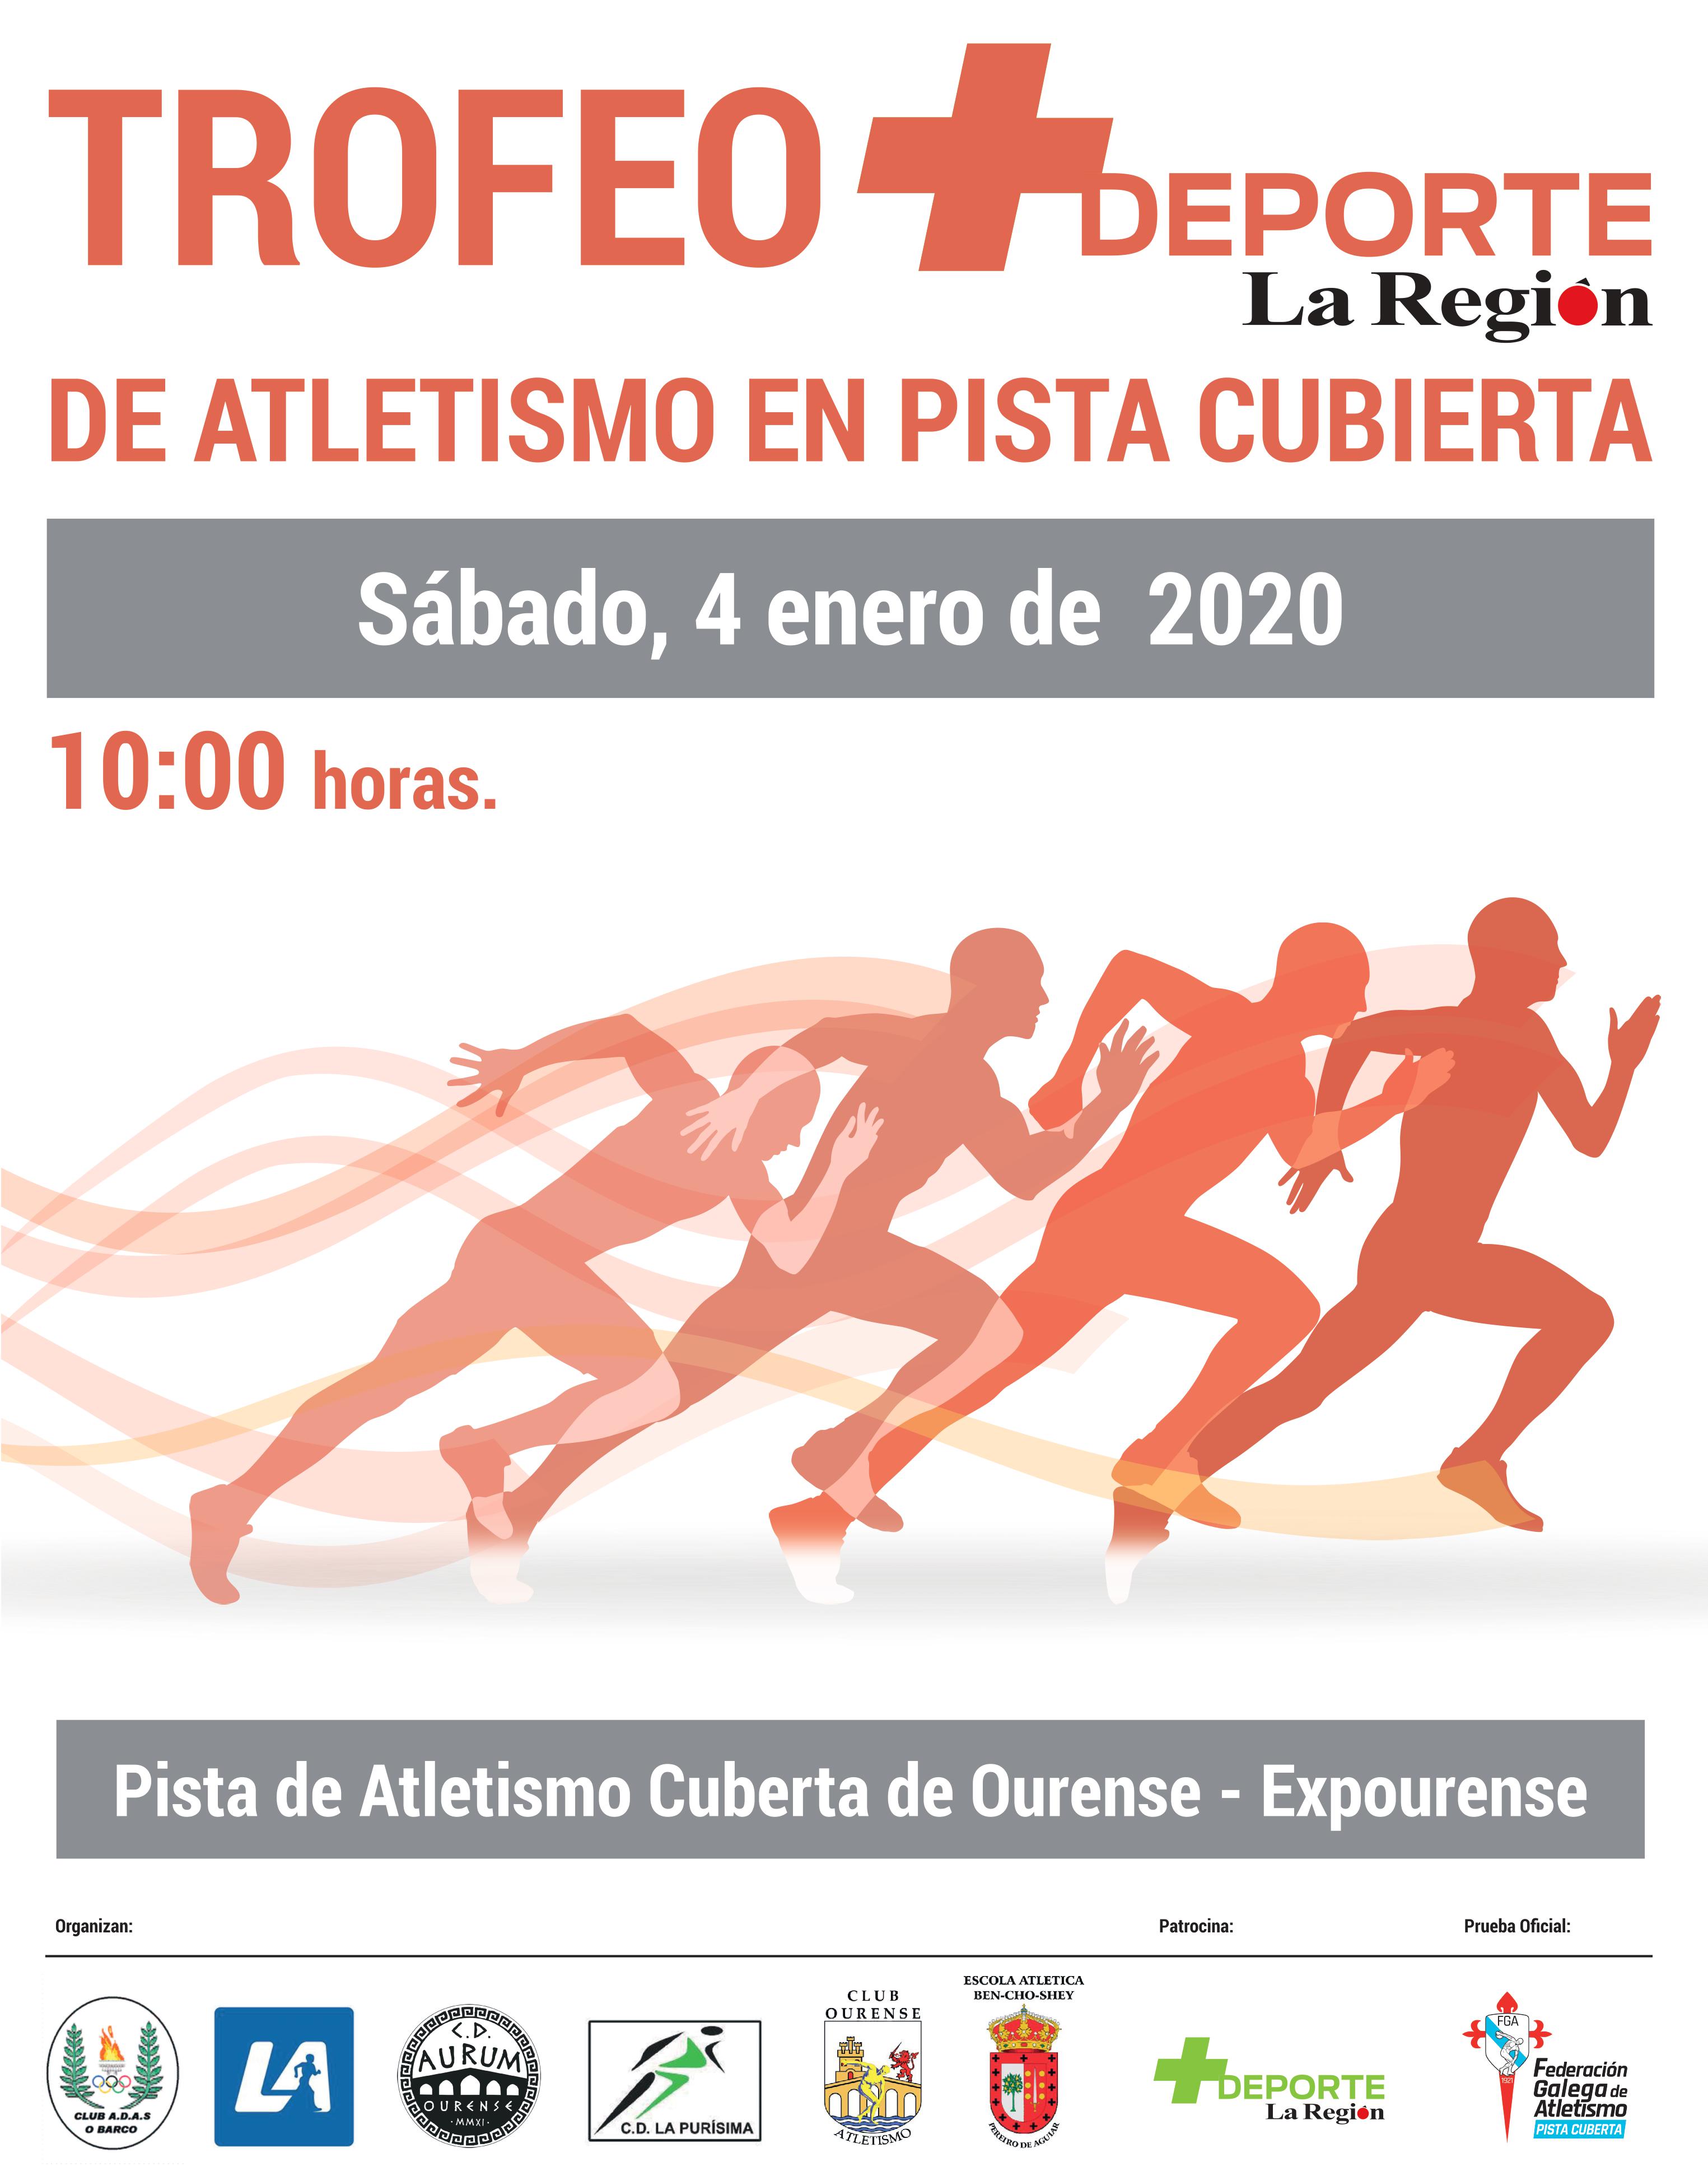 Trofeo + Deporte La Región de Atletismo en Pista Cuberta